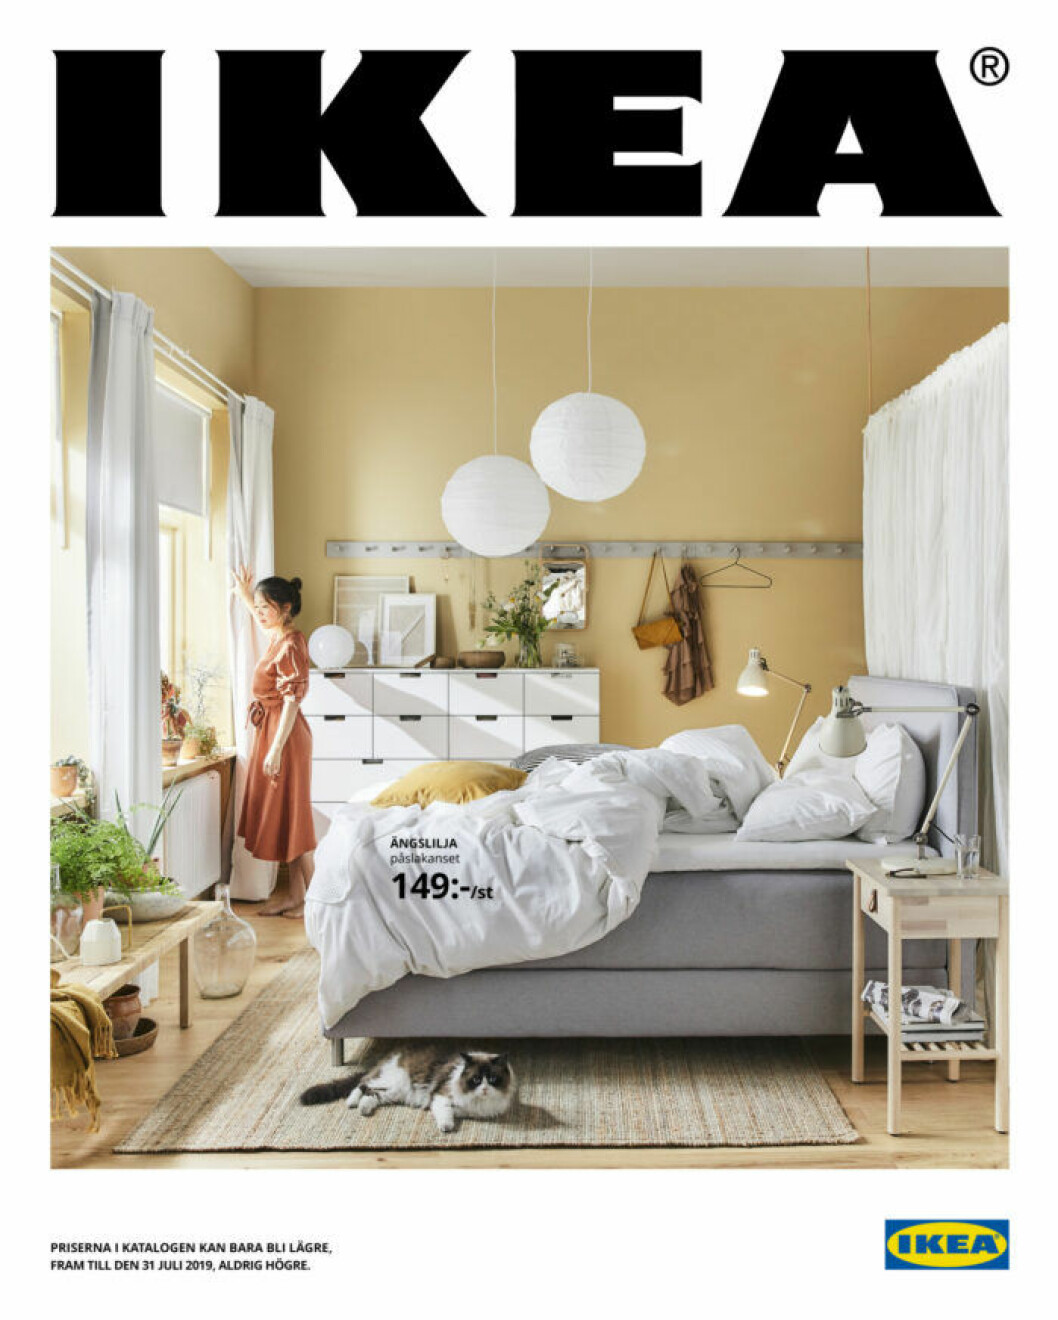 Ikea-katalogen våren 2019